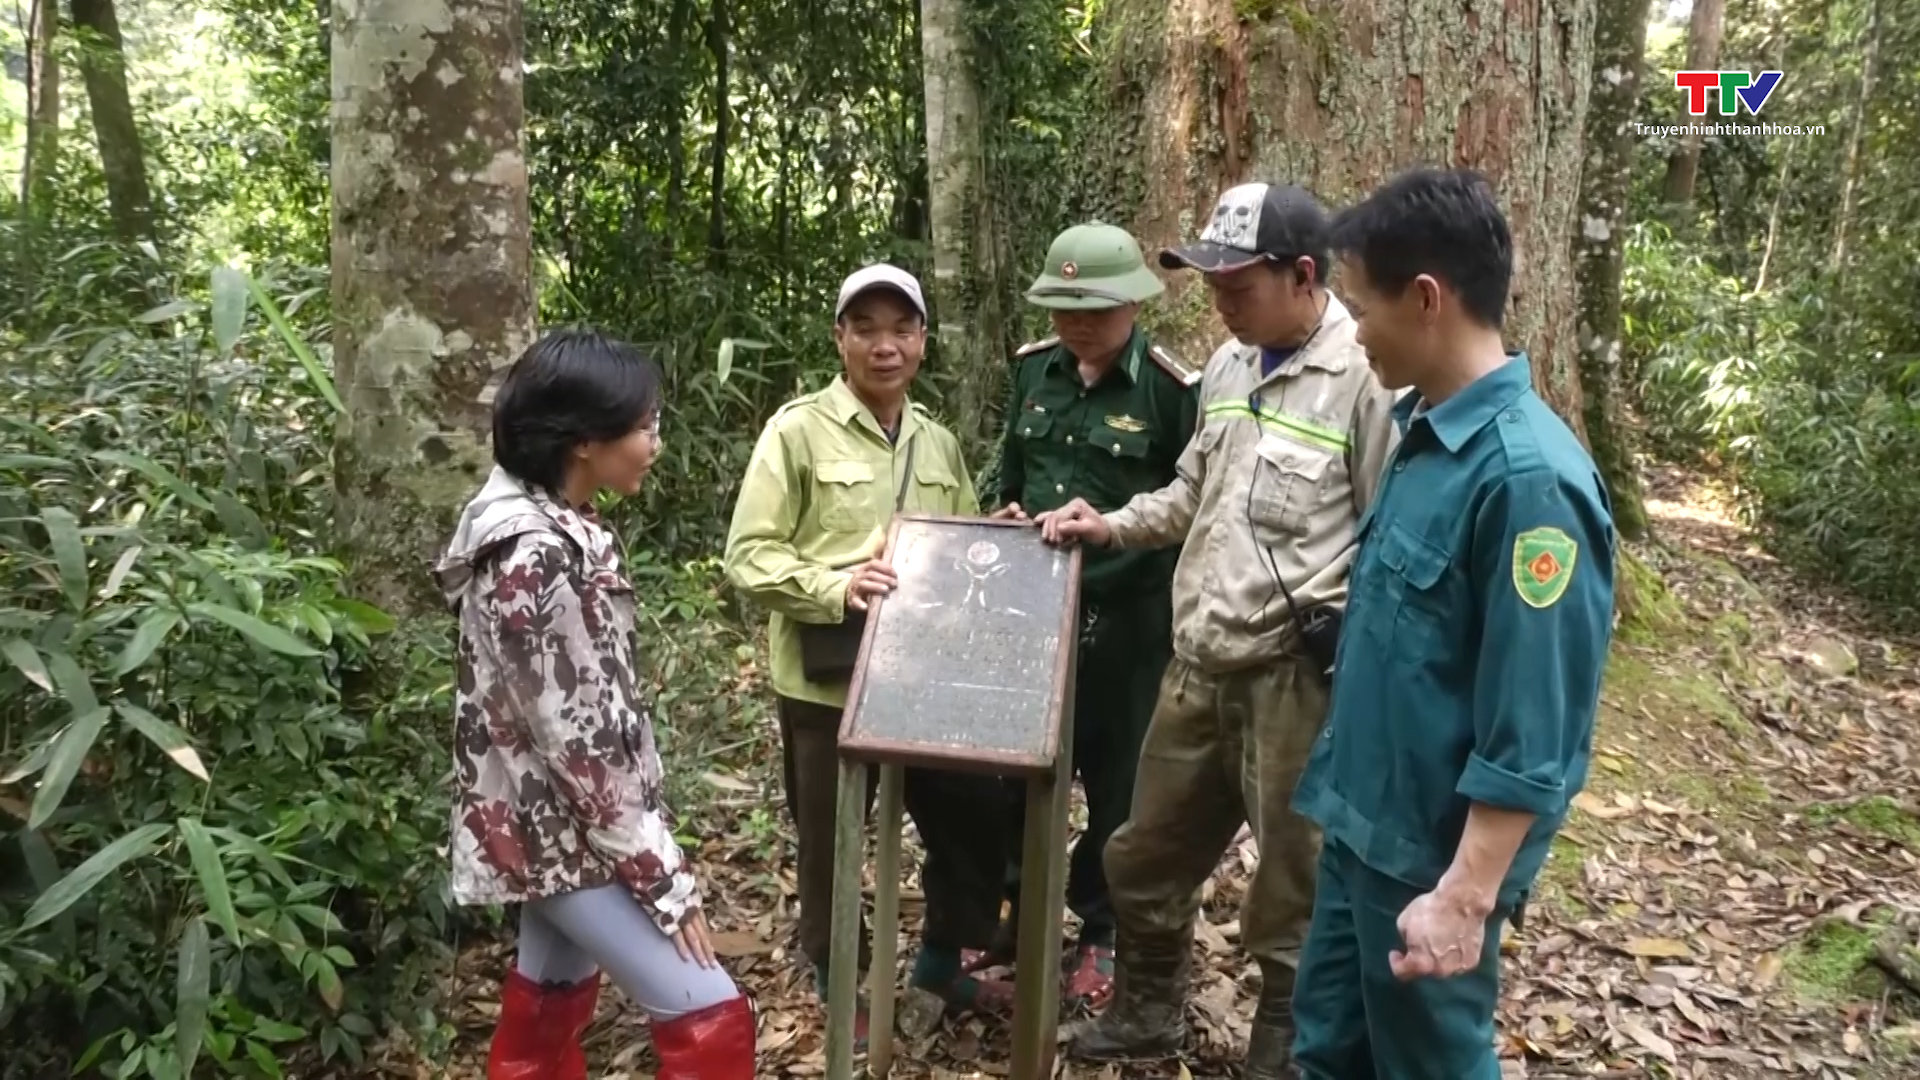 Hoa hậu Hoàn vũ Việt Nam tham gia trồng rừng tại Khu bảo tồn Thiên nhiên Xuân Liên, huyện Thường Xuân - Ảnh 5.